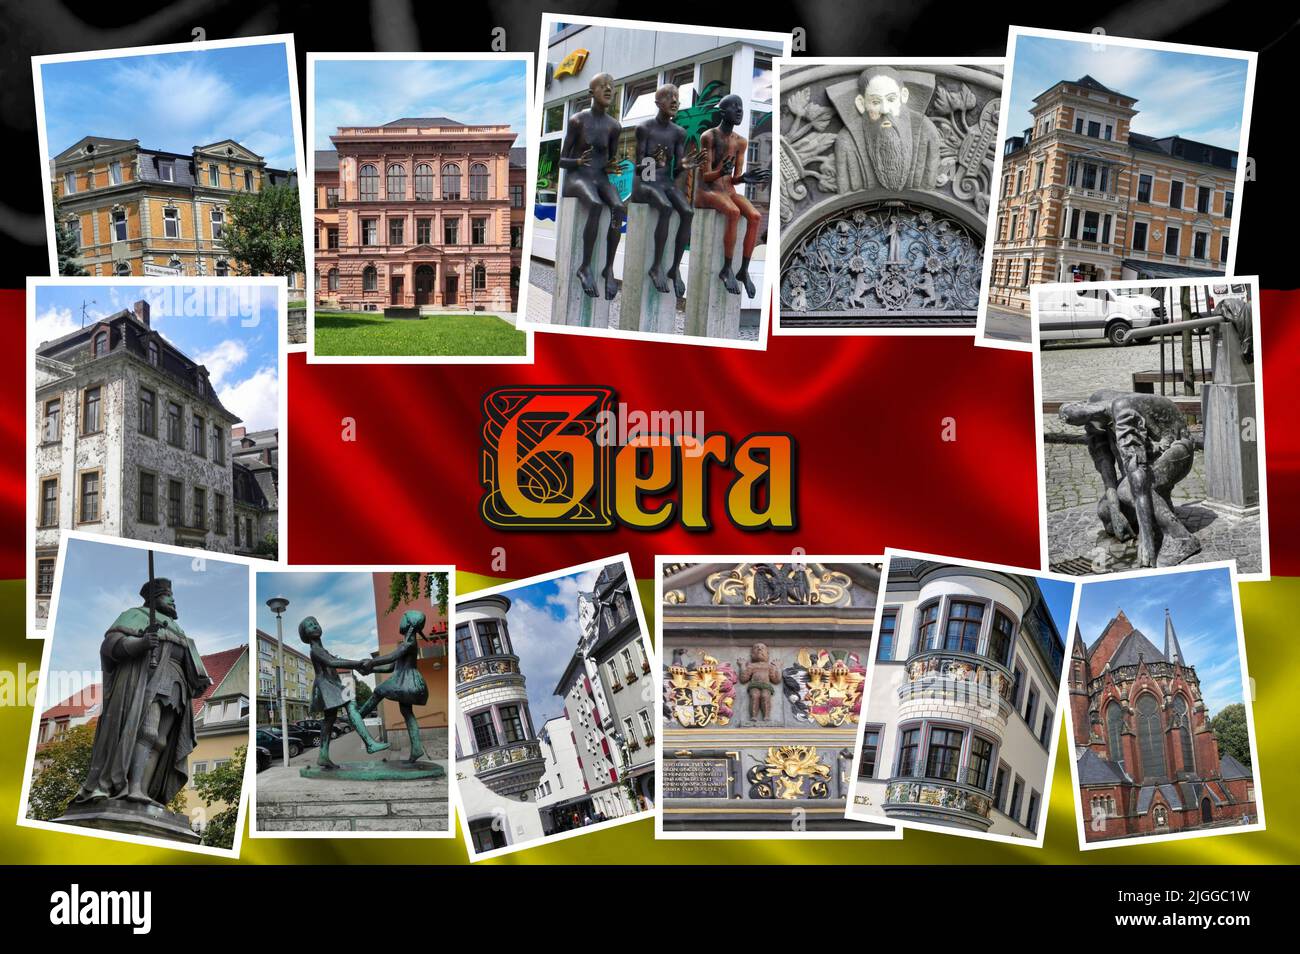 Gera ist eine Stadt in Thüringen, Deutschland. Sie ist nach der Hauptstadt Erfurt und Jena die drittgrößte Stadt des Landes. Stockfoto